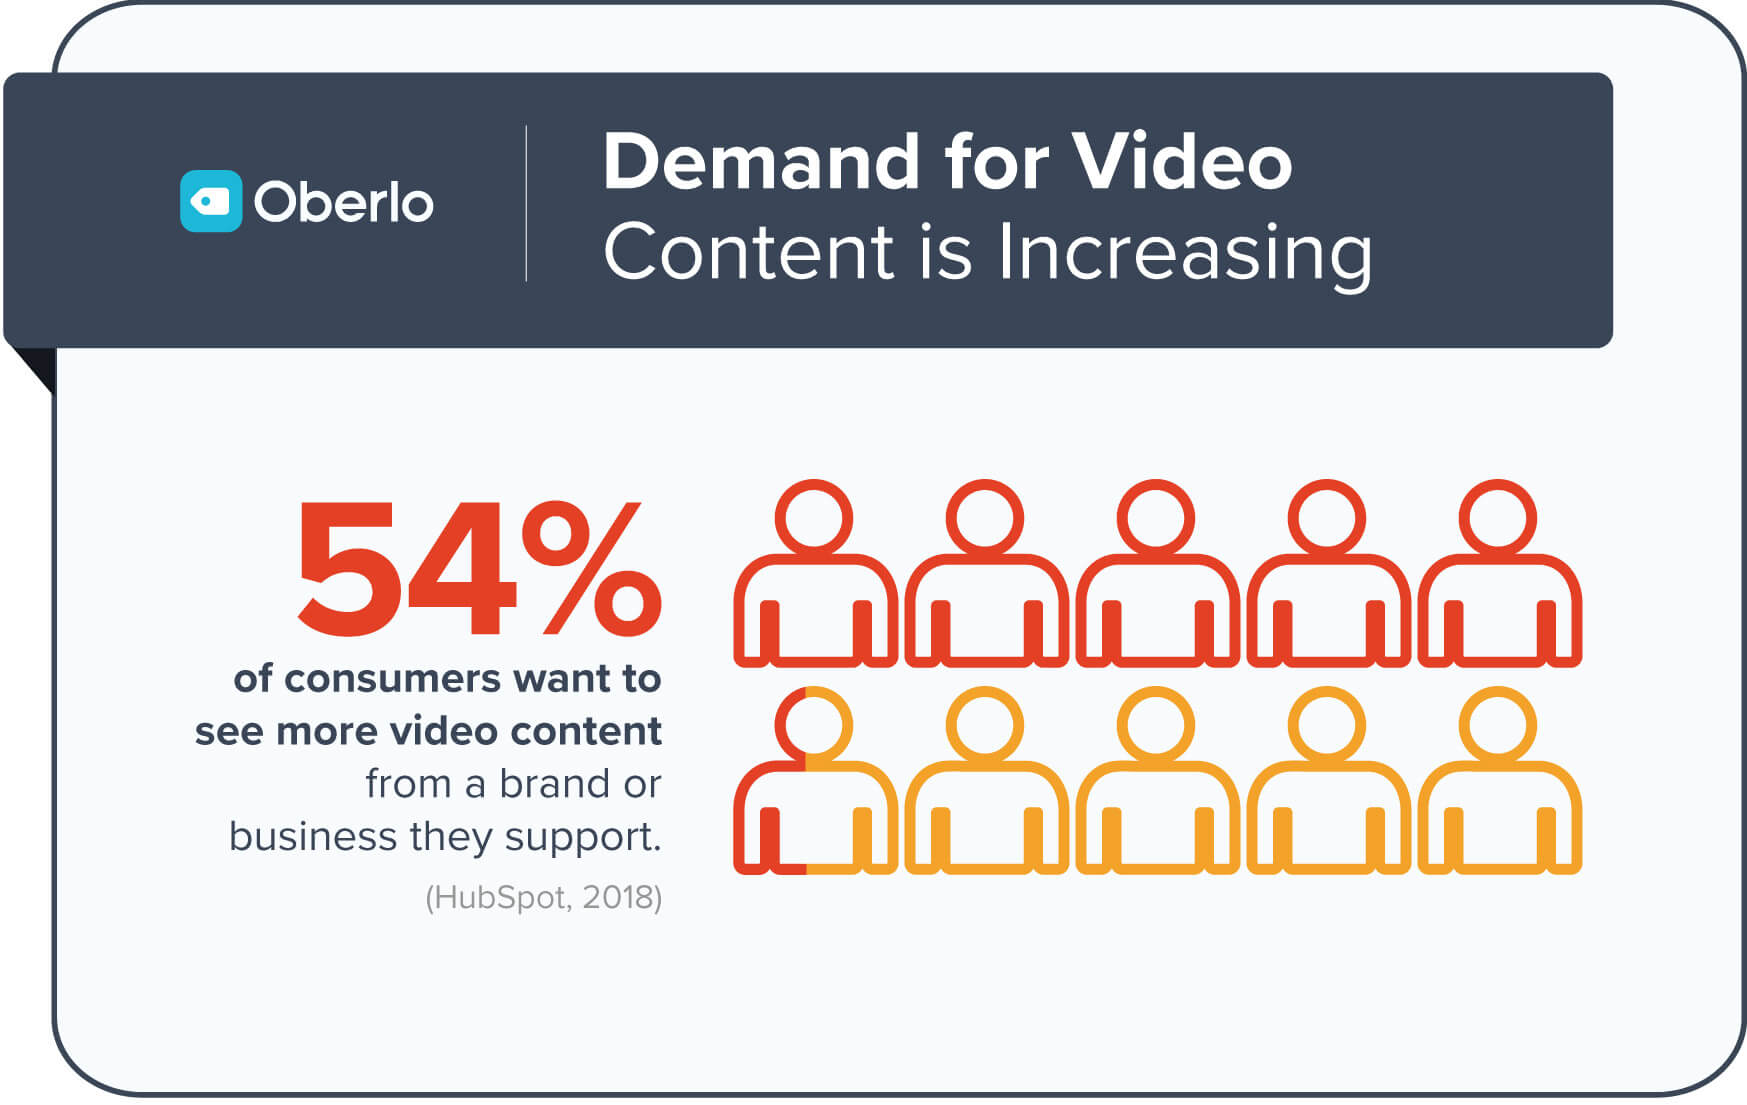 54% khách hàng muốn xem nhiều video hơn từ những thương hiệu hoặc công ty họ thích